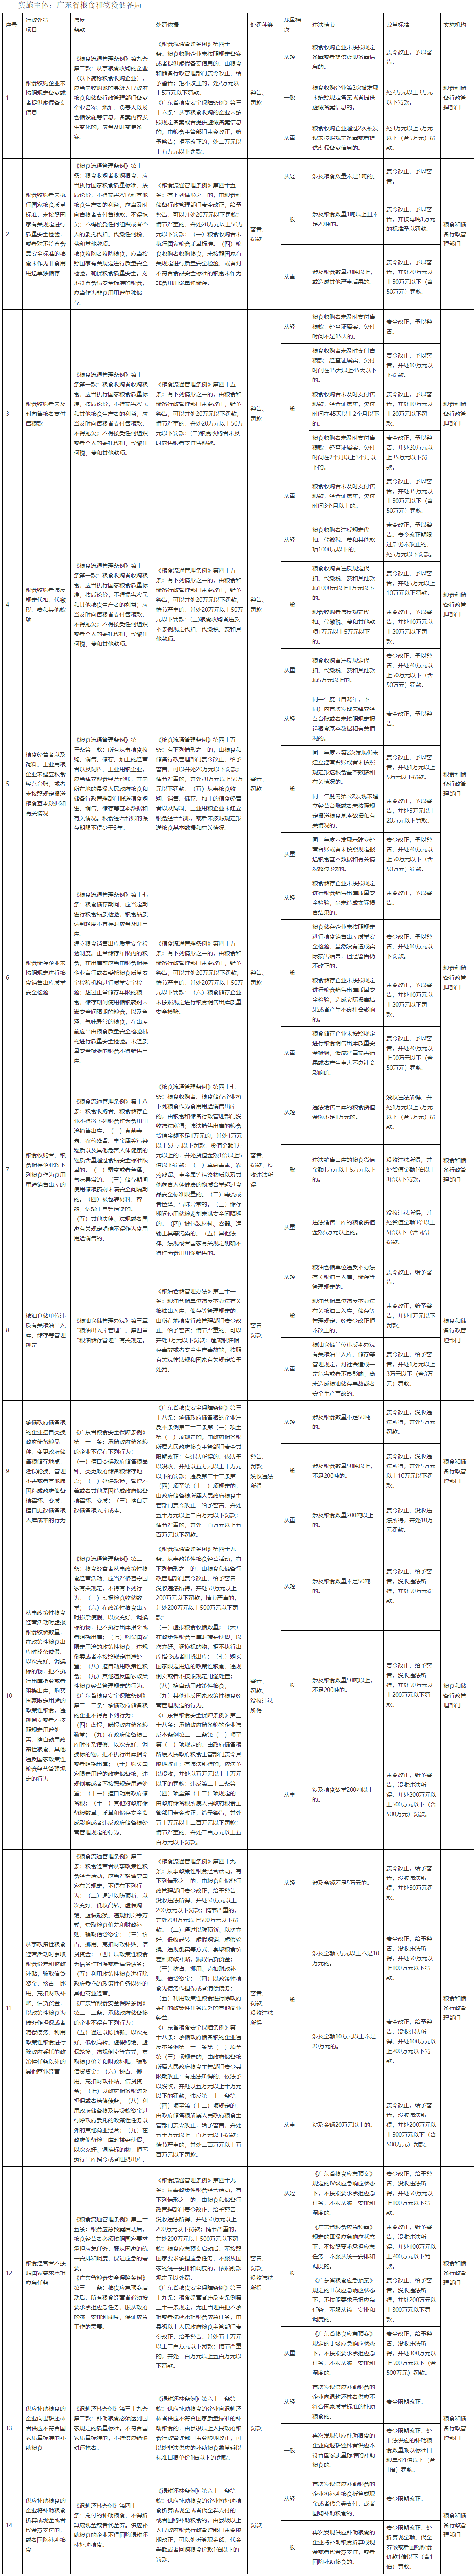 广东省粮食和储备行政管理部门行政处罚自由裁量权裁量基准表.png